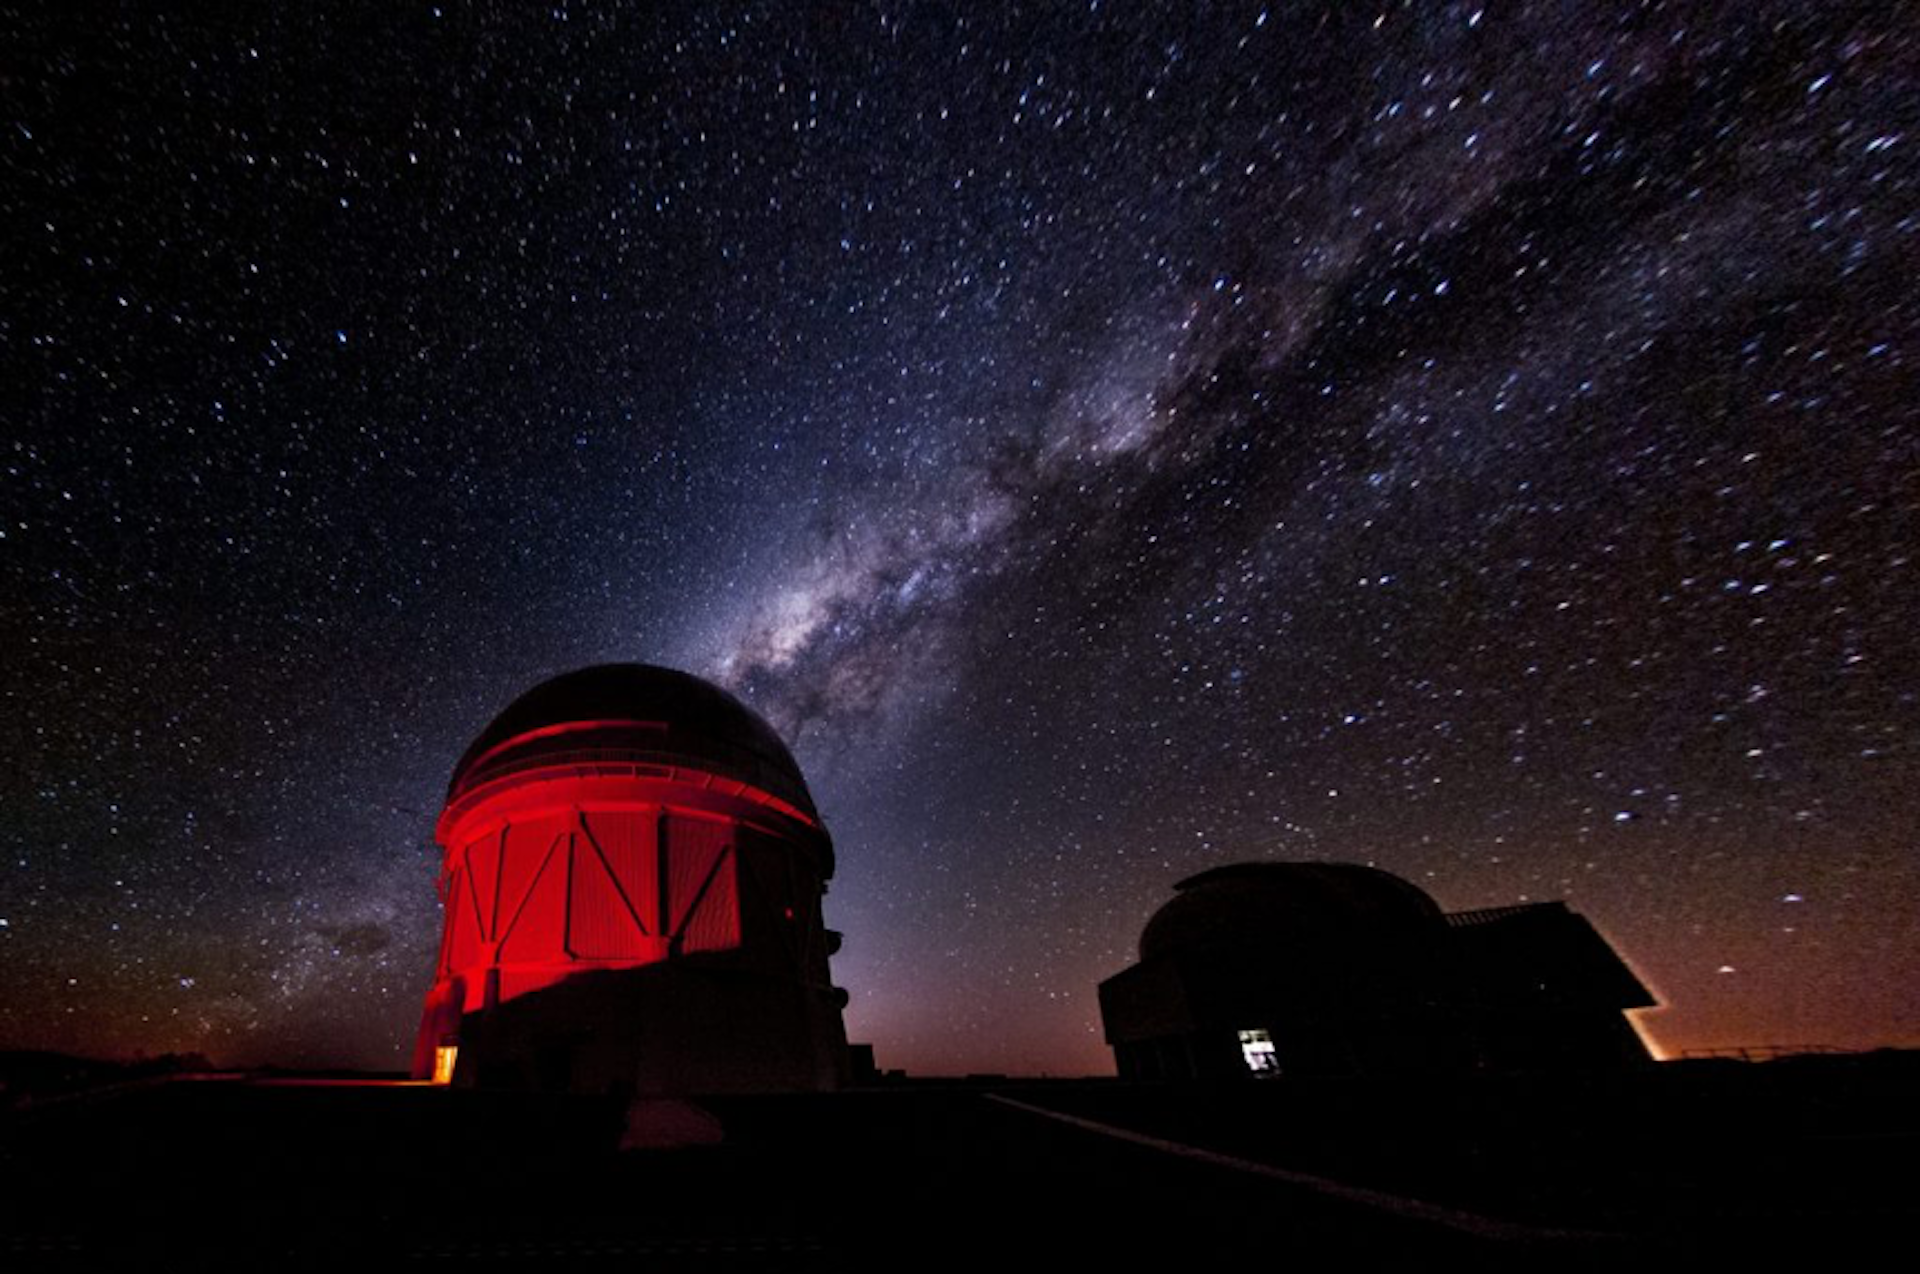 عکسی از ساختمان رصدخانه با نور قرمز با آسمان پر ستاره در پس زمینه.